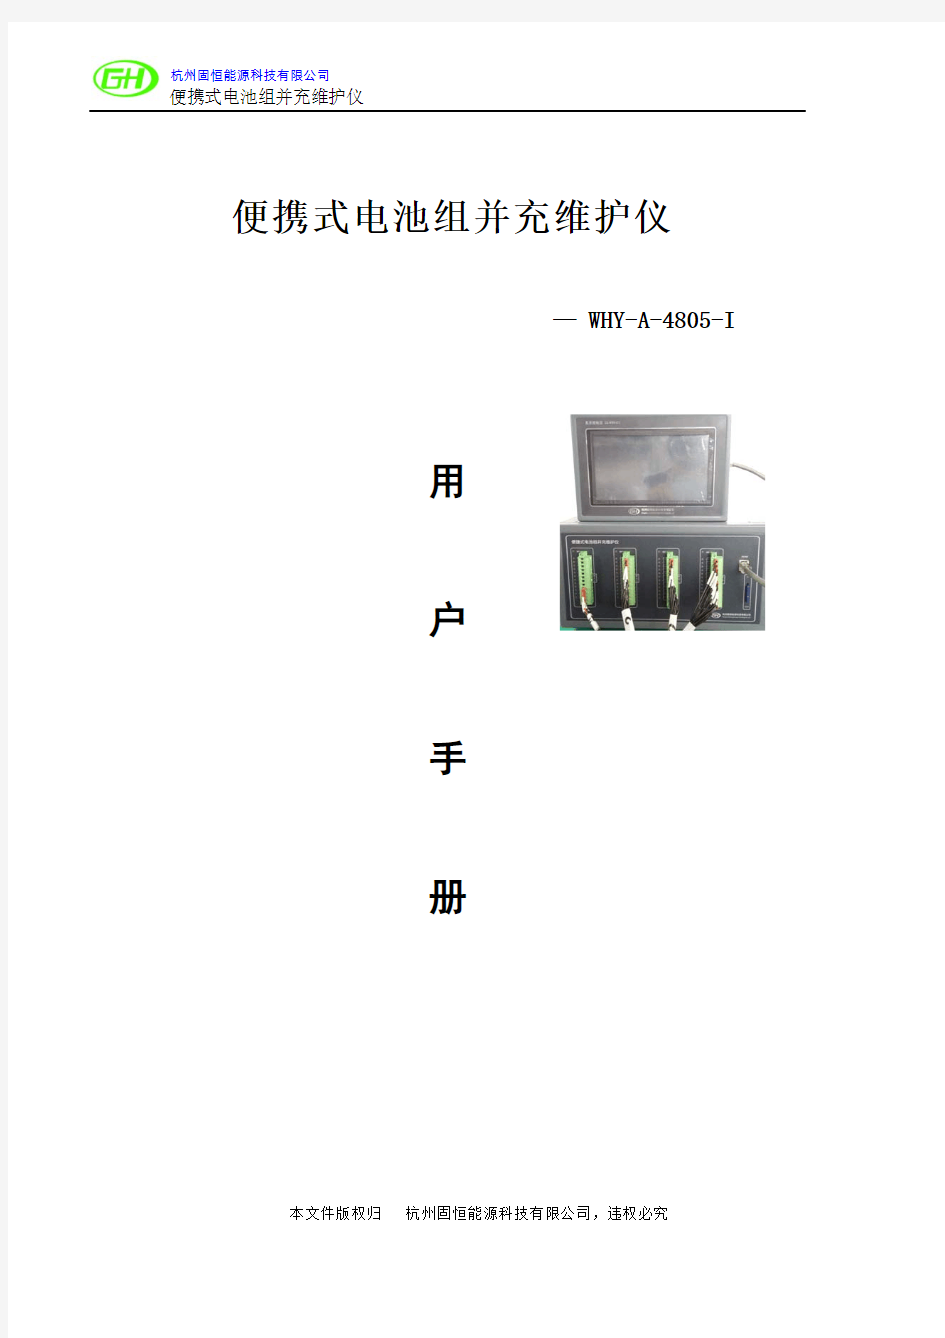 便携式电池组并行均衡充电维护仪用户手册(WHY-A-4805-I)